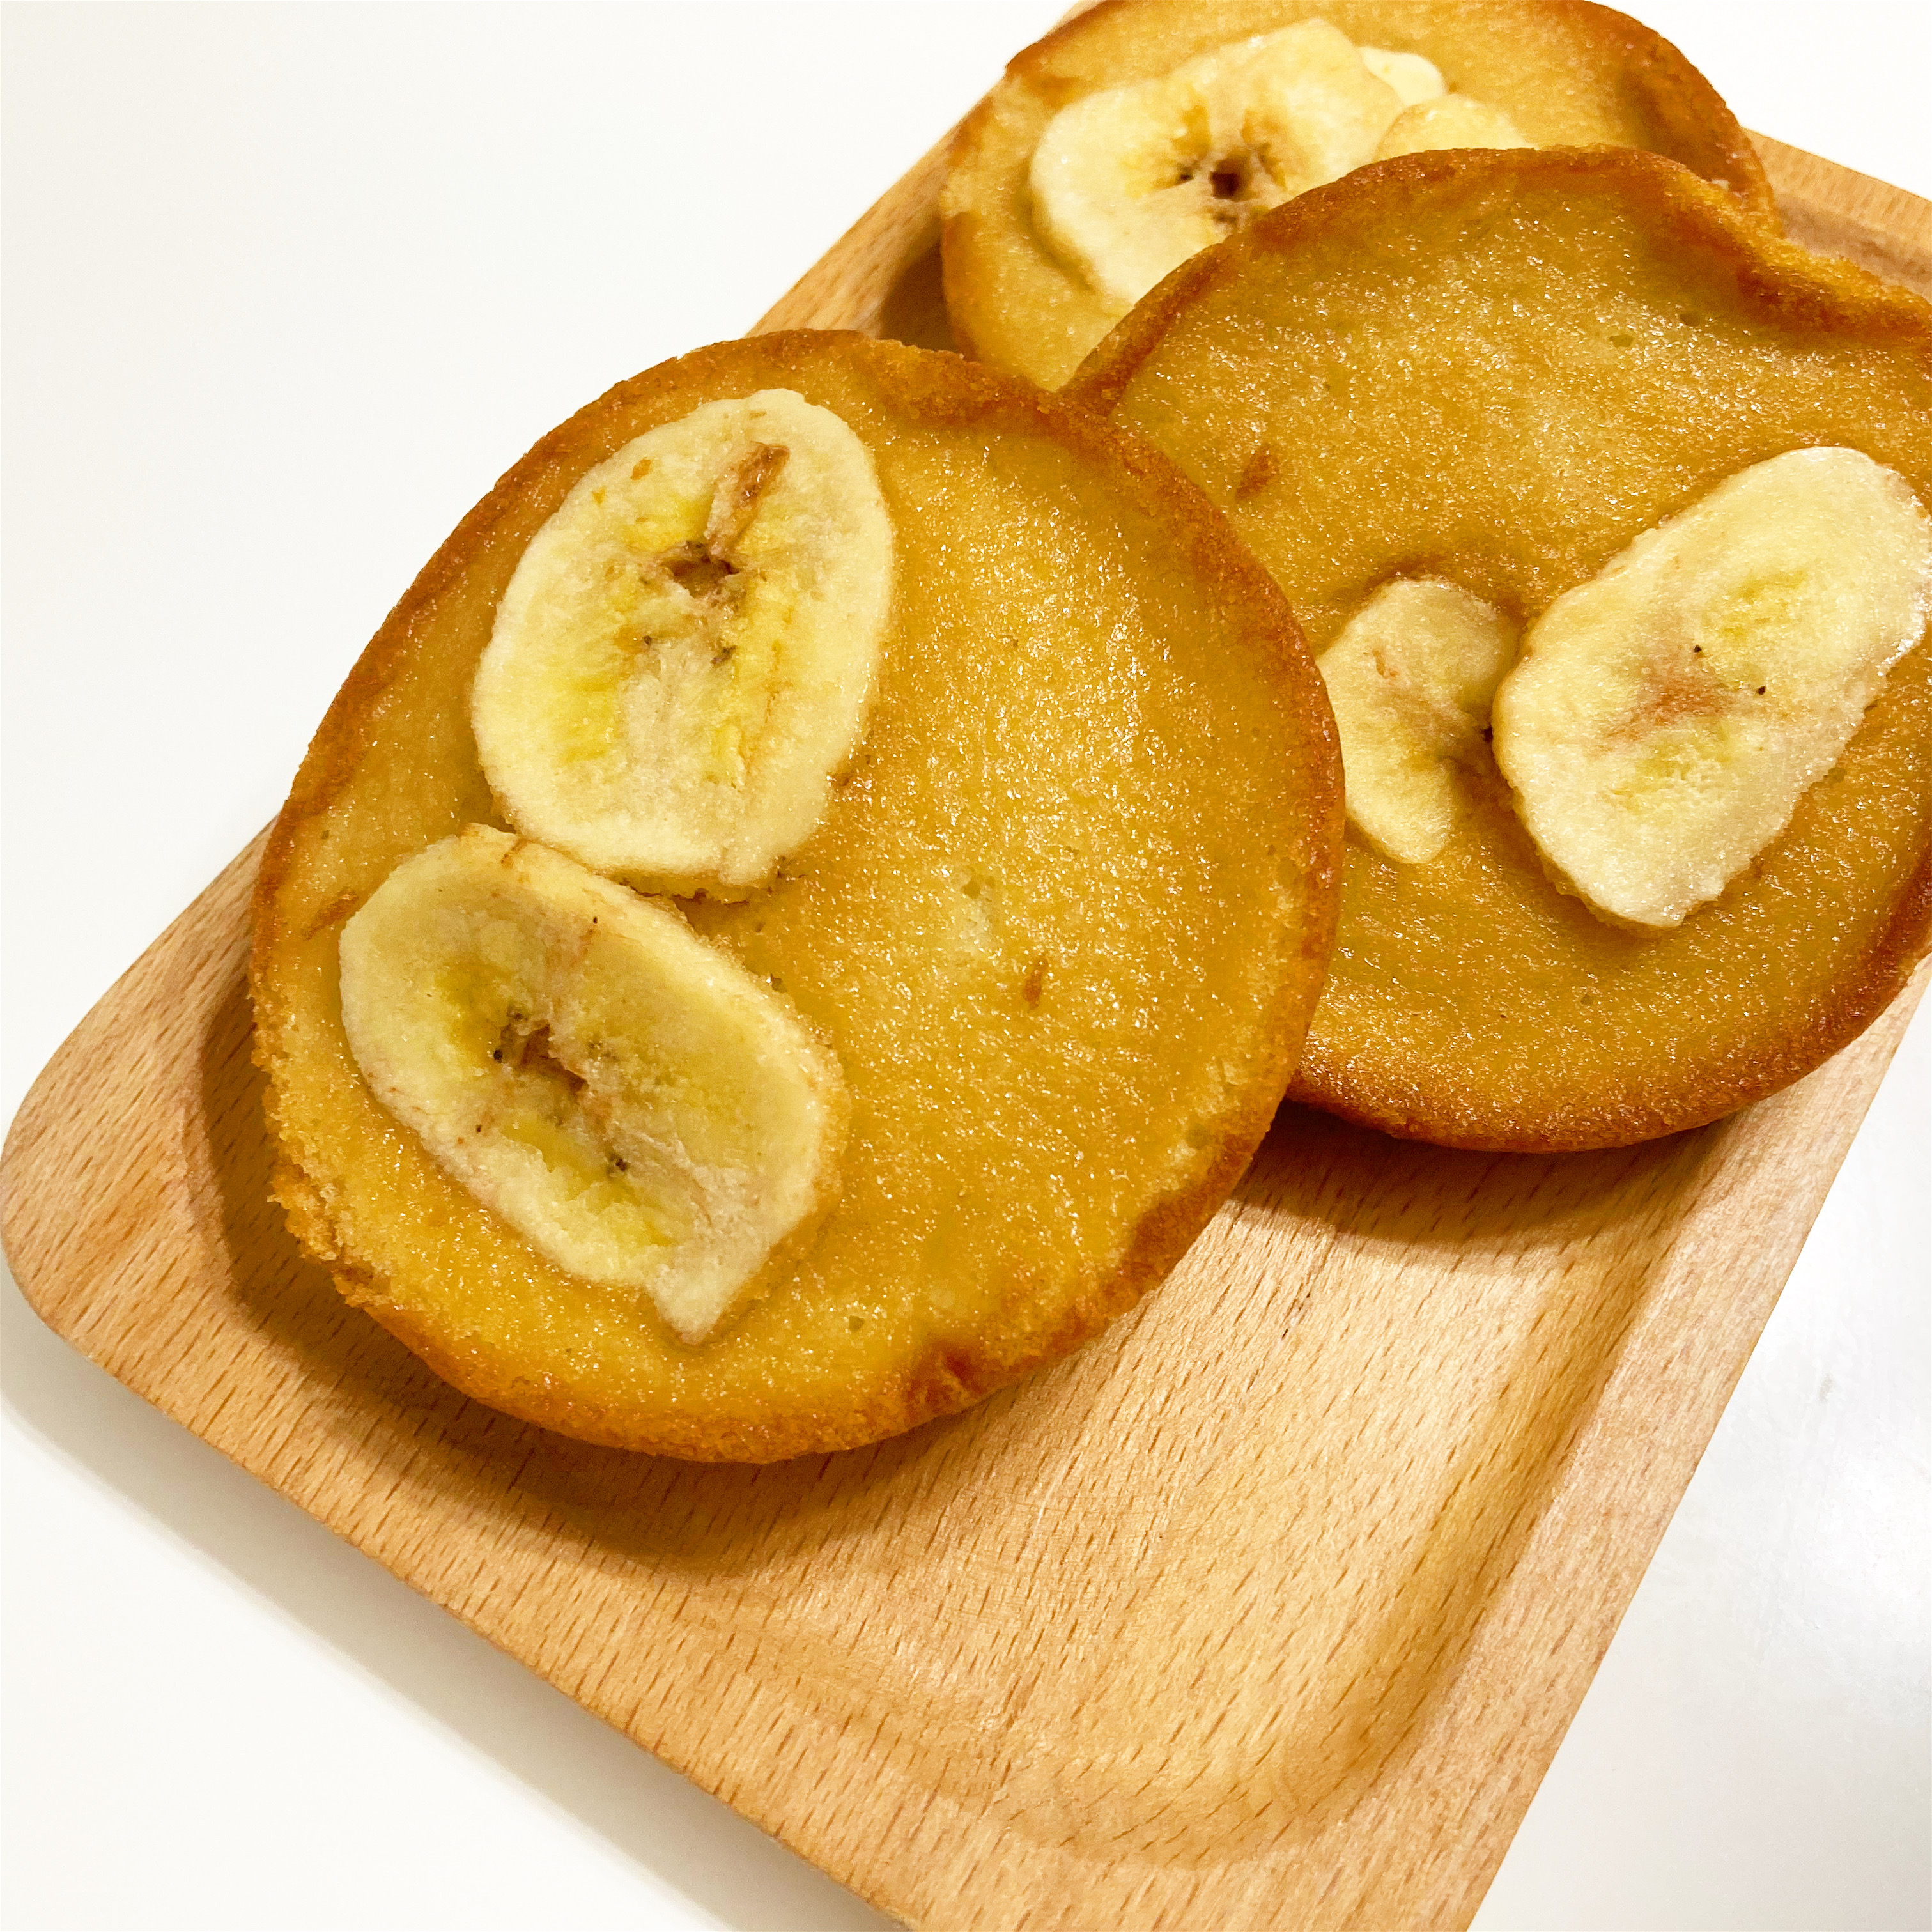 セブン-イレブンの贅沢ケーキ「7P 国産小麦のバナナケーキ 3個入」